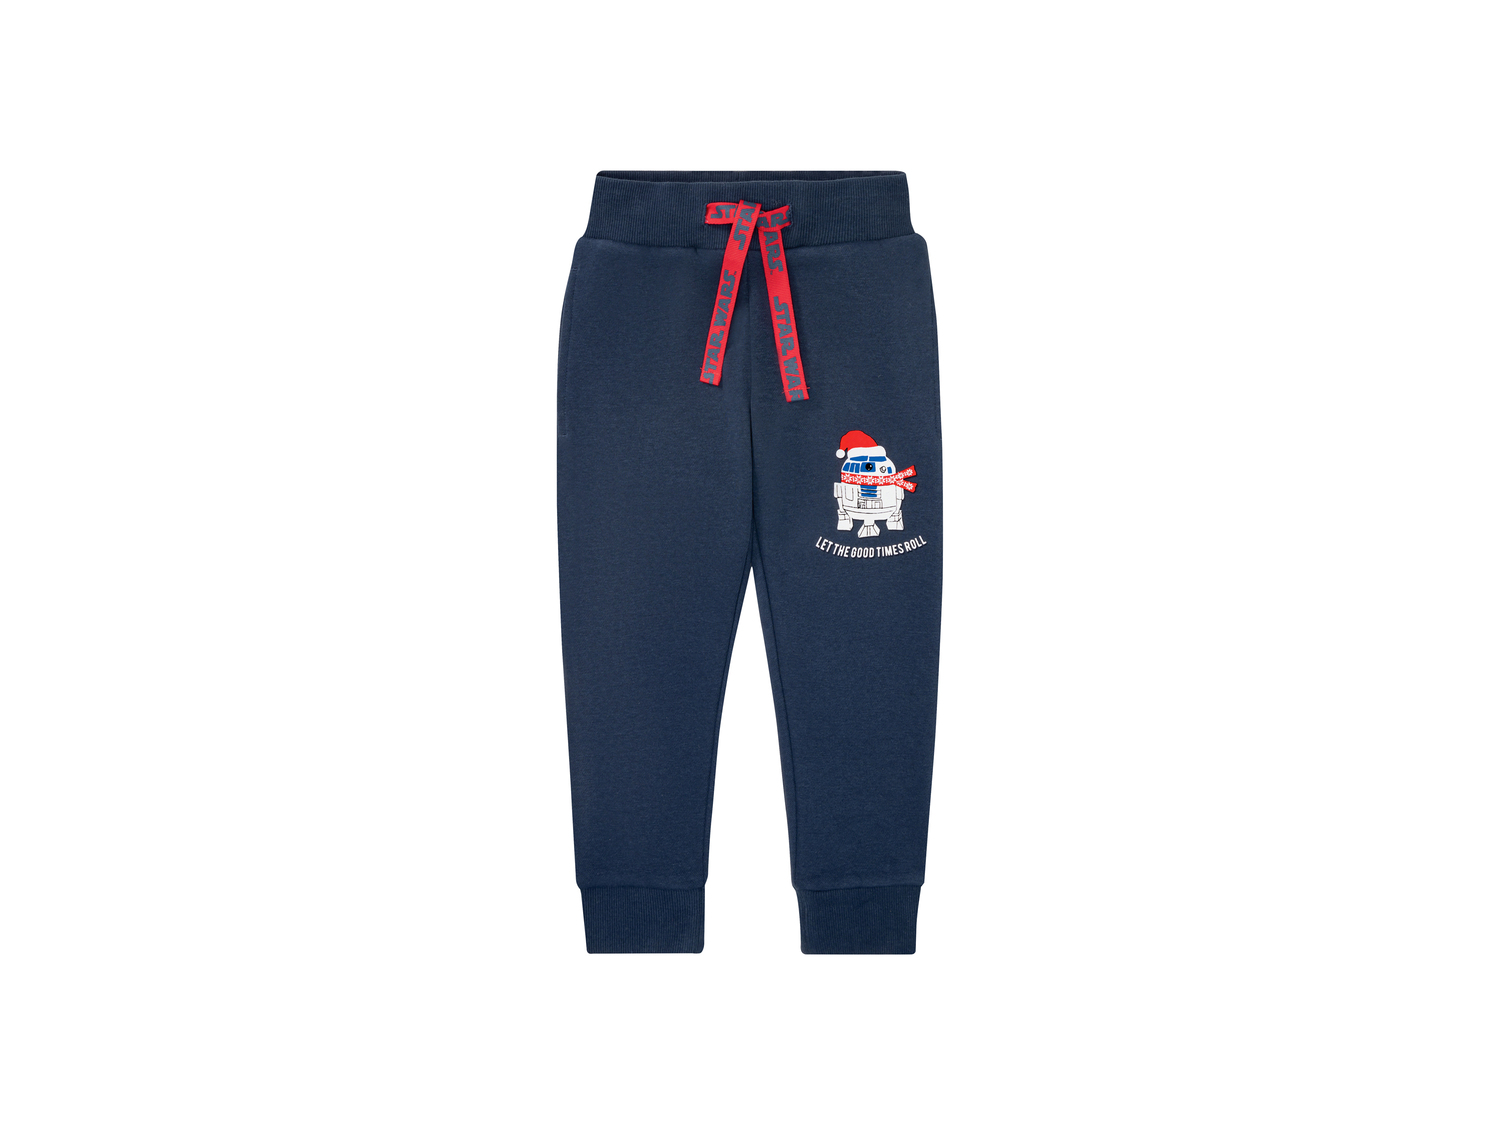 Pantaloni sportivi da bambino Spiderman, Mickey Mouse, Star Wars Oeko-tex, prezzo ...